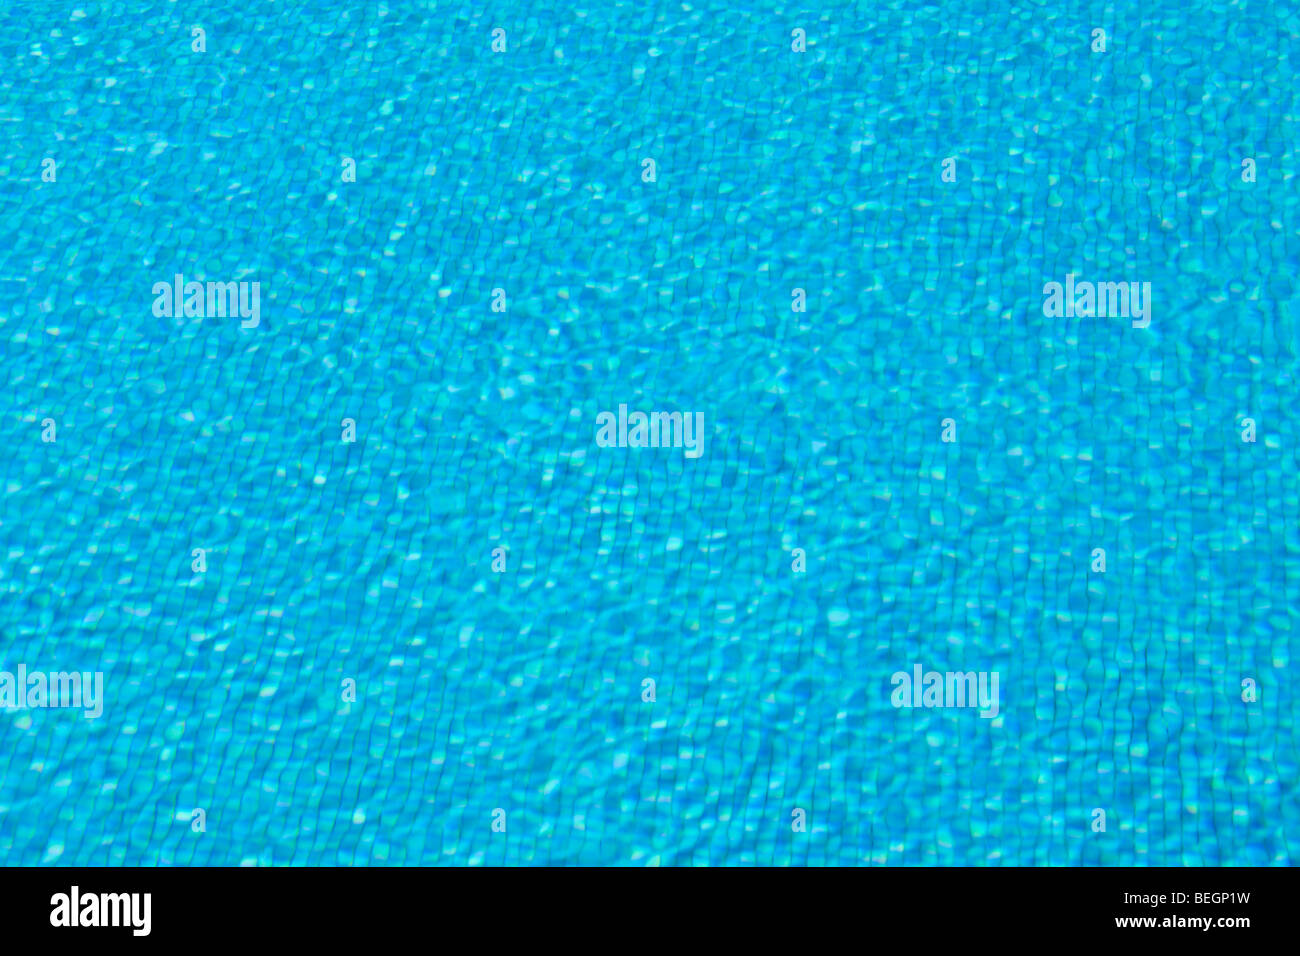 Carreaux bleus et ondulations de l'eau dans une "piscine" Banque D'Images